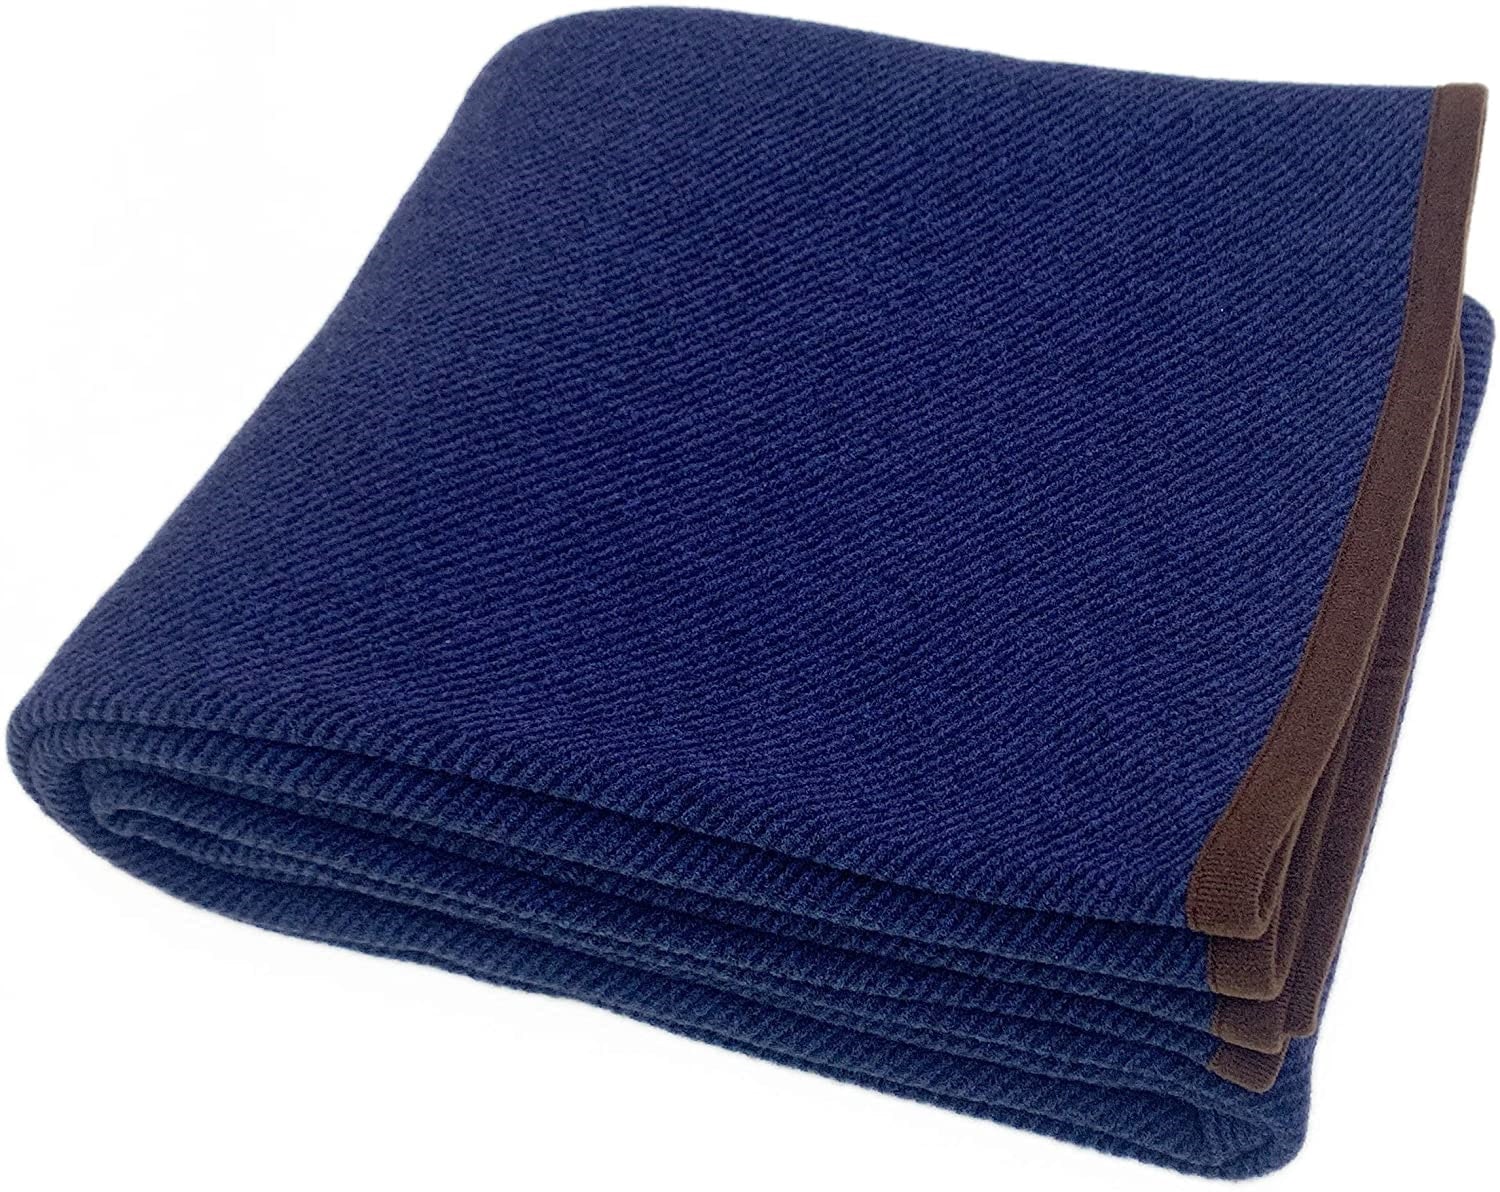 PuTian Merino wool Blanket 3.5lbs